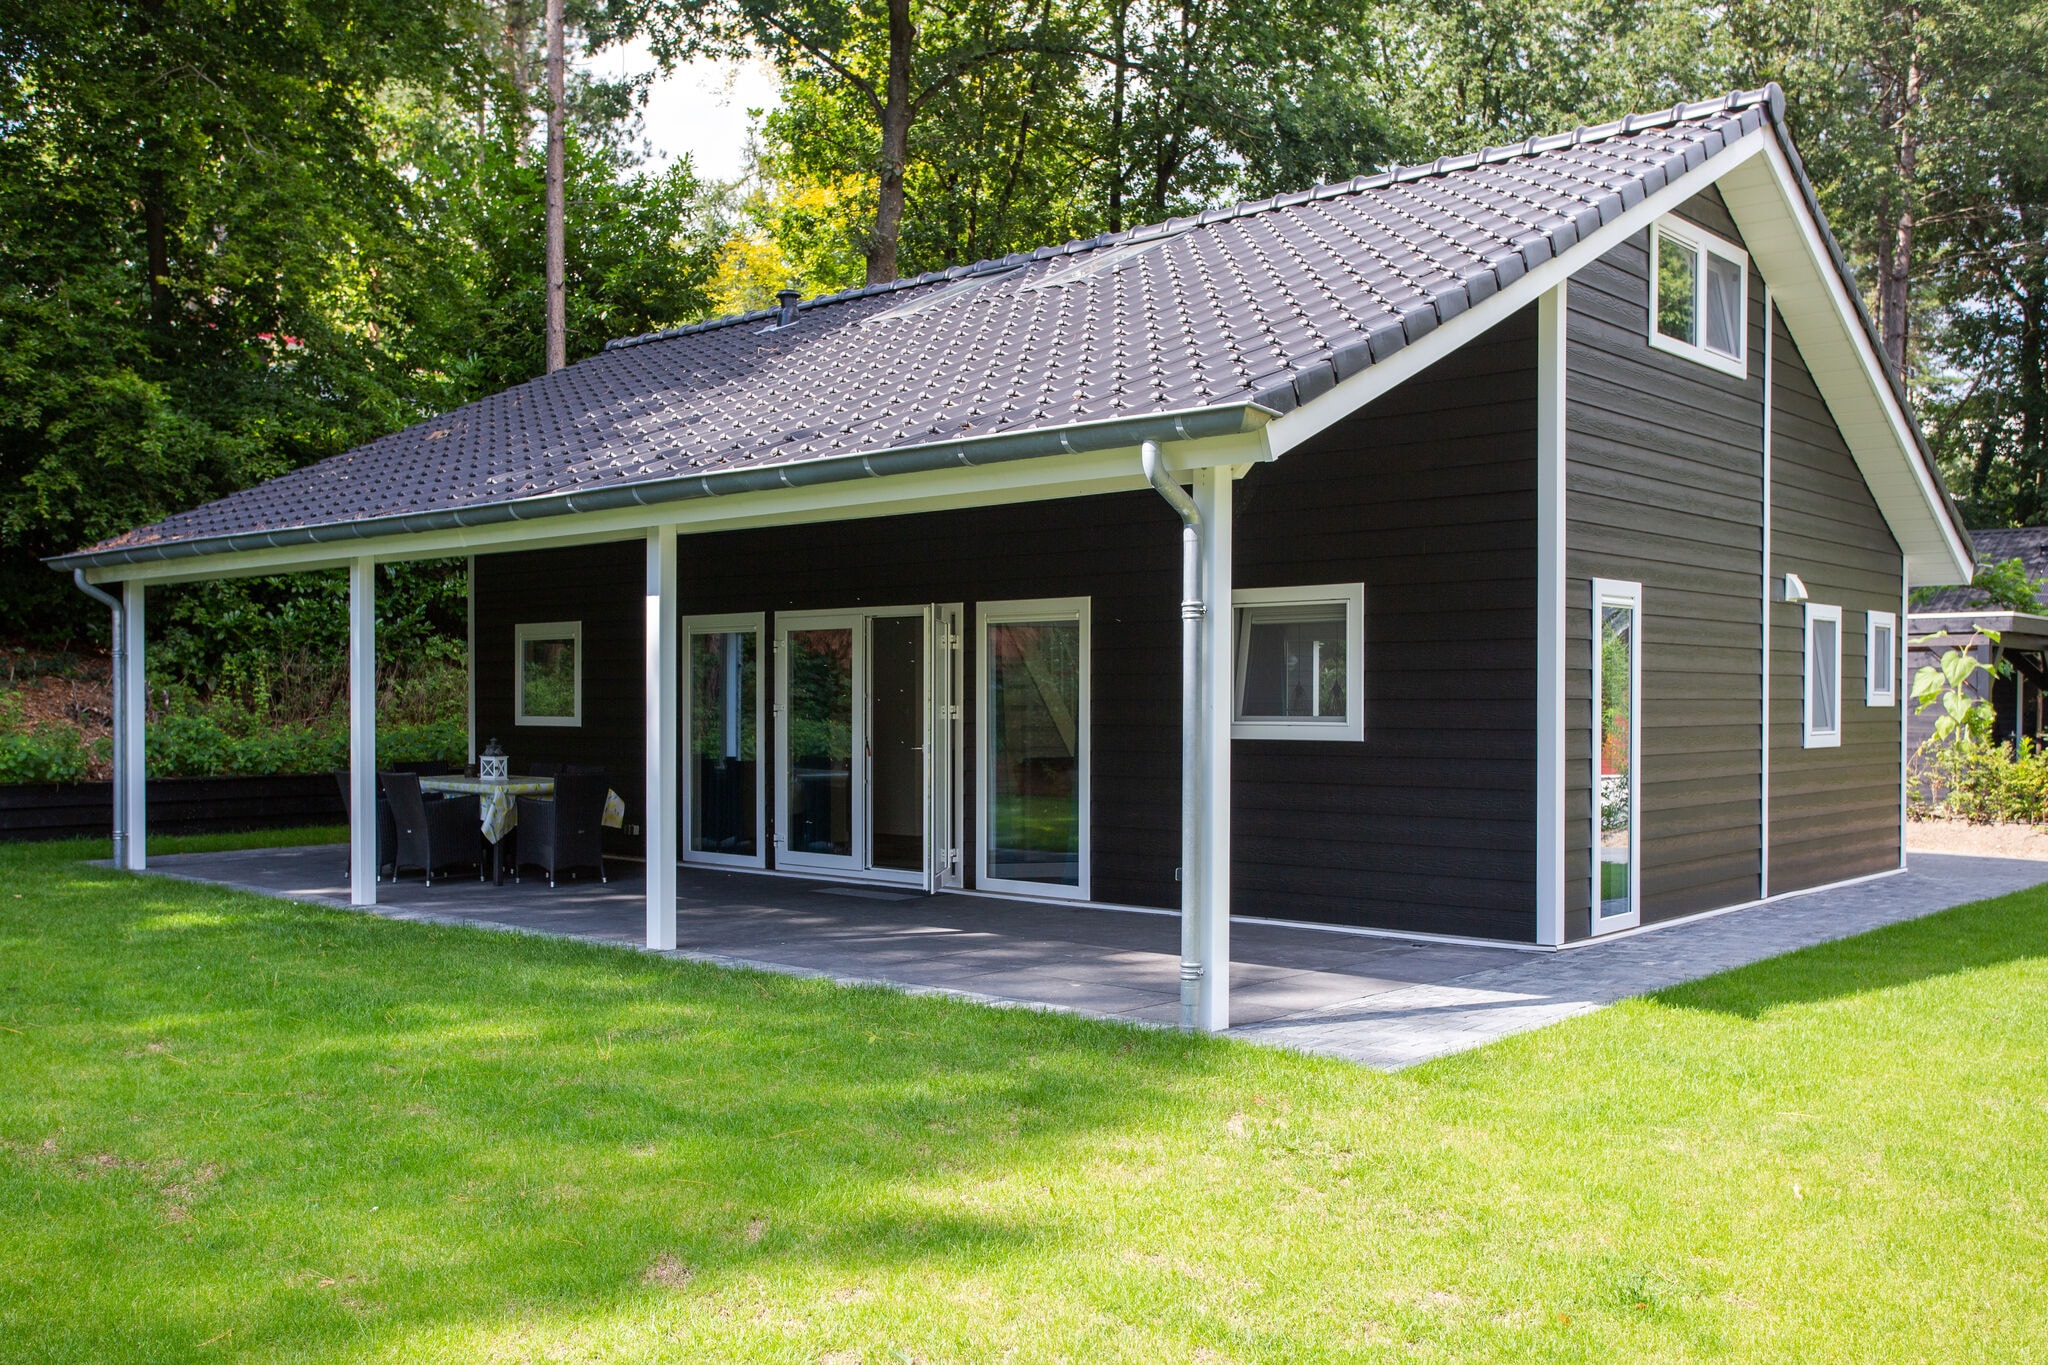 Maison de vacances avec terrasse couverte à Rhenen